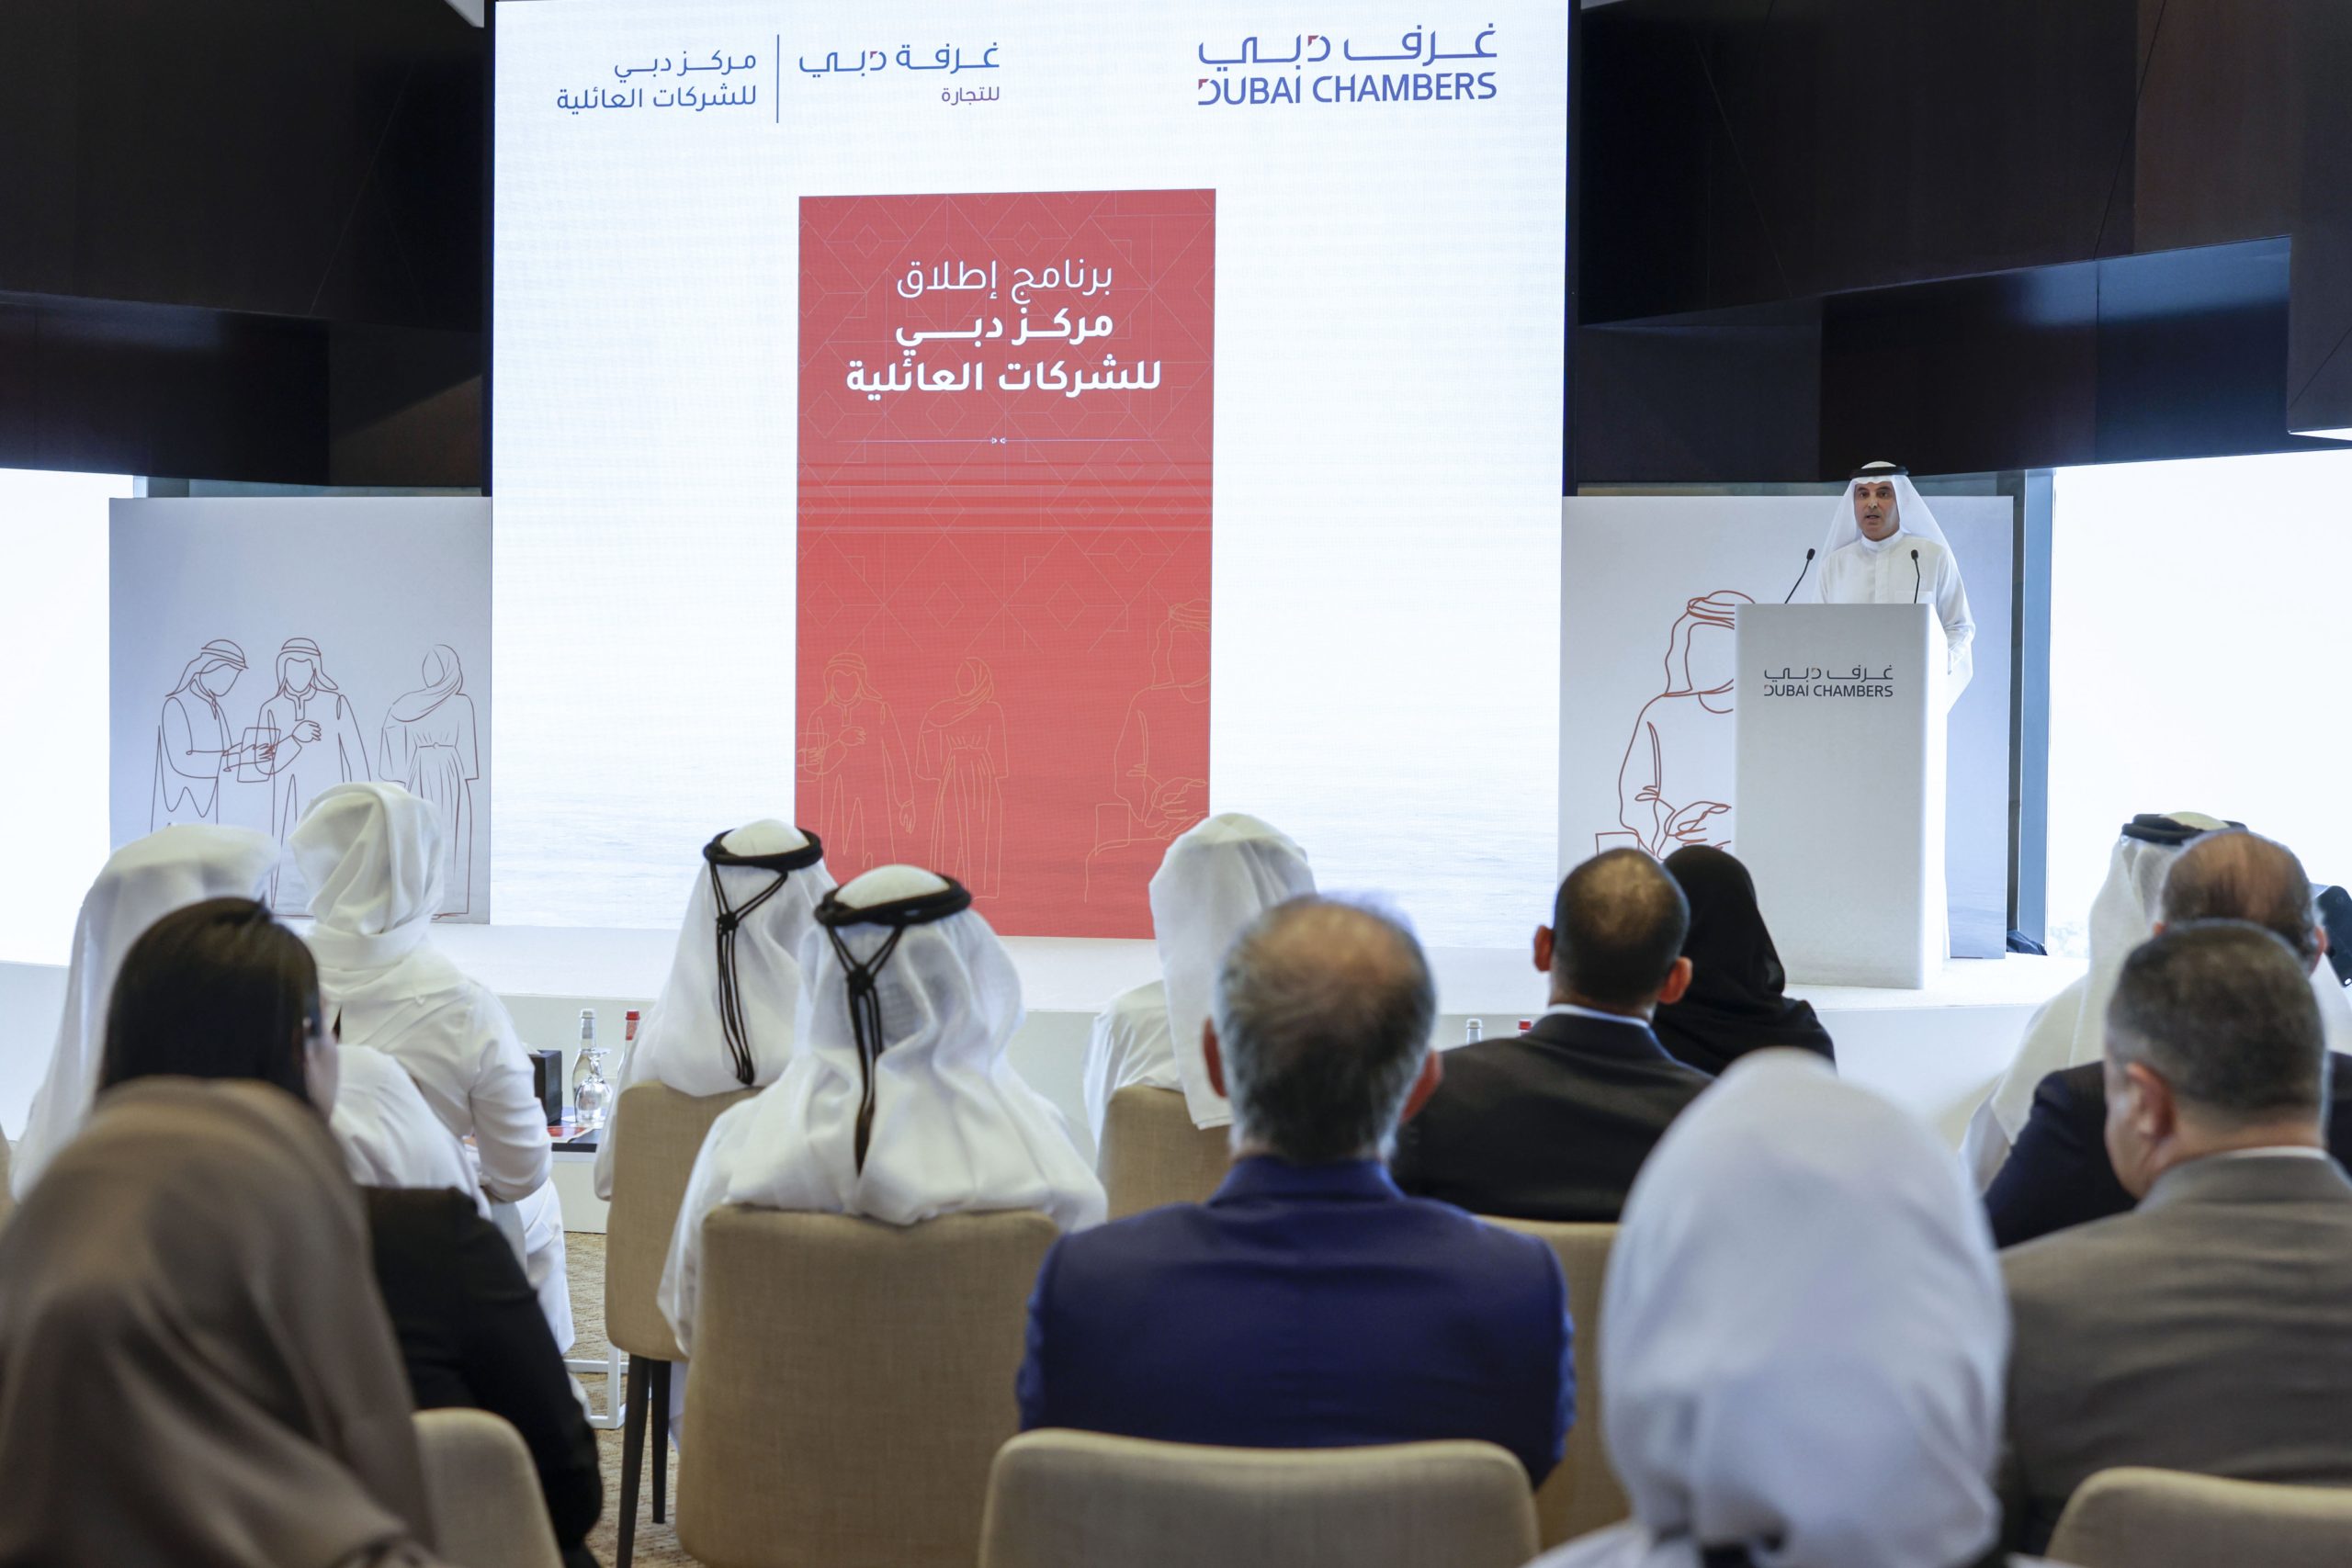 مكتوم بن محمد يدشّن أعمال مركز دبي للشركات العائلية تحت مظلة غُرَف دبي